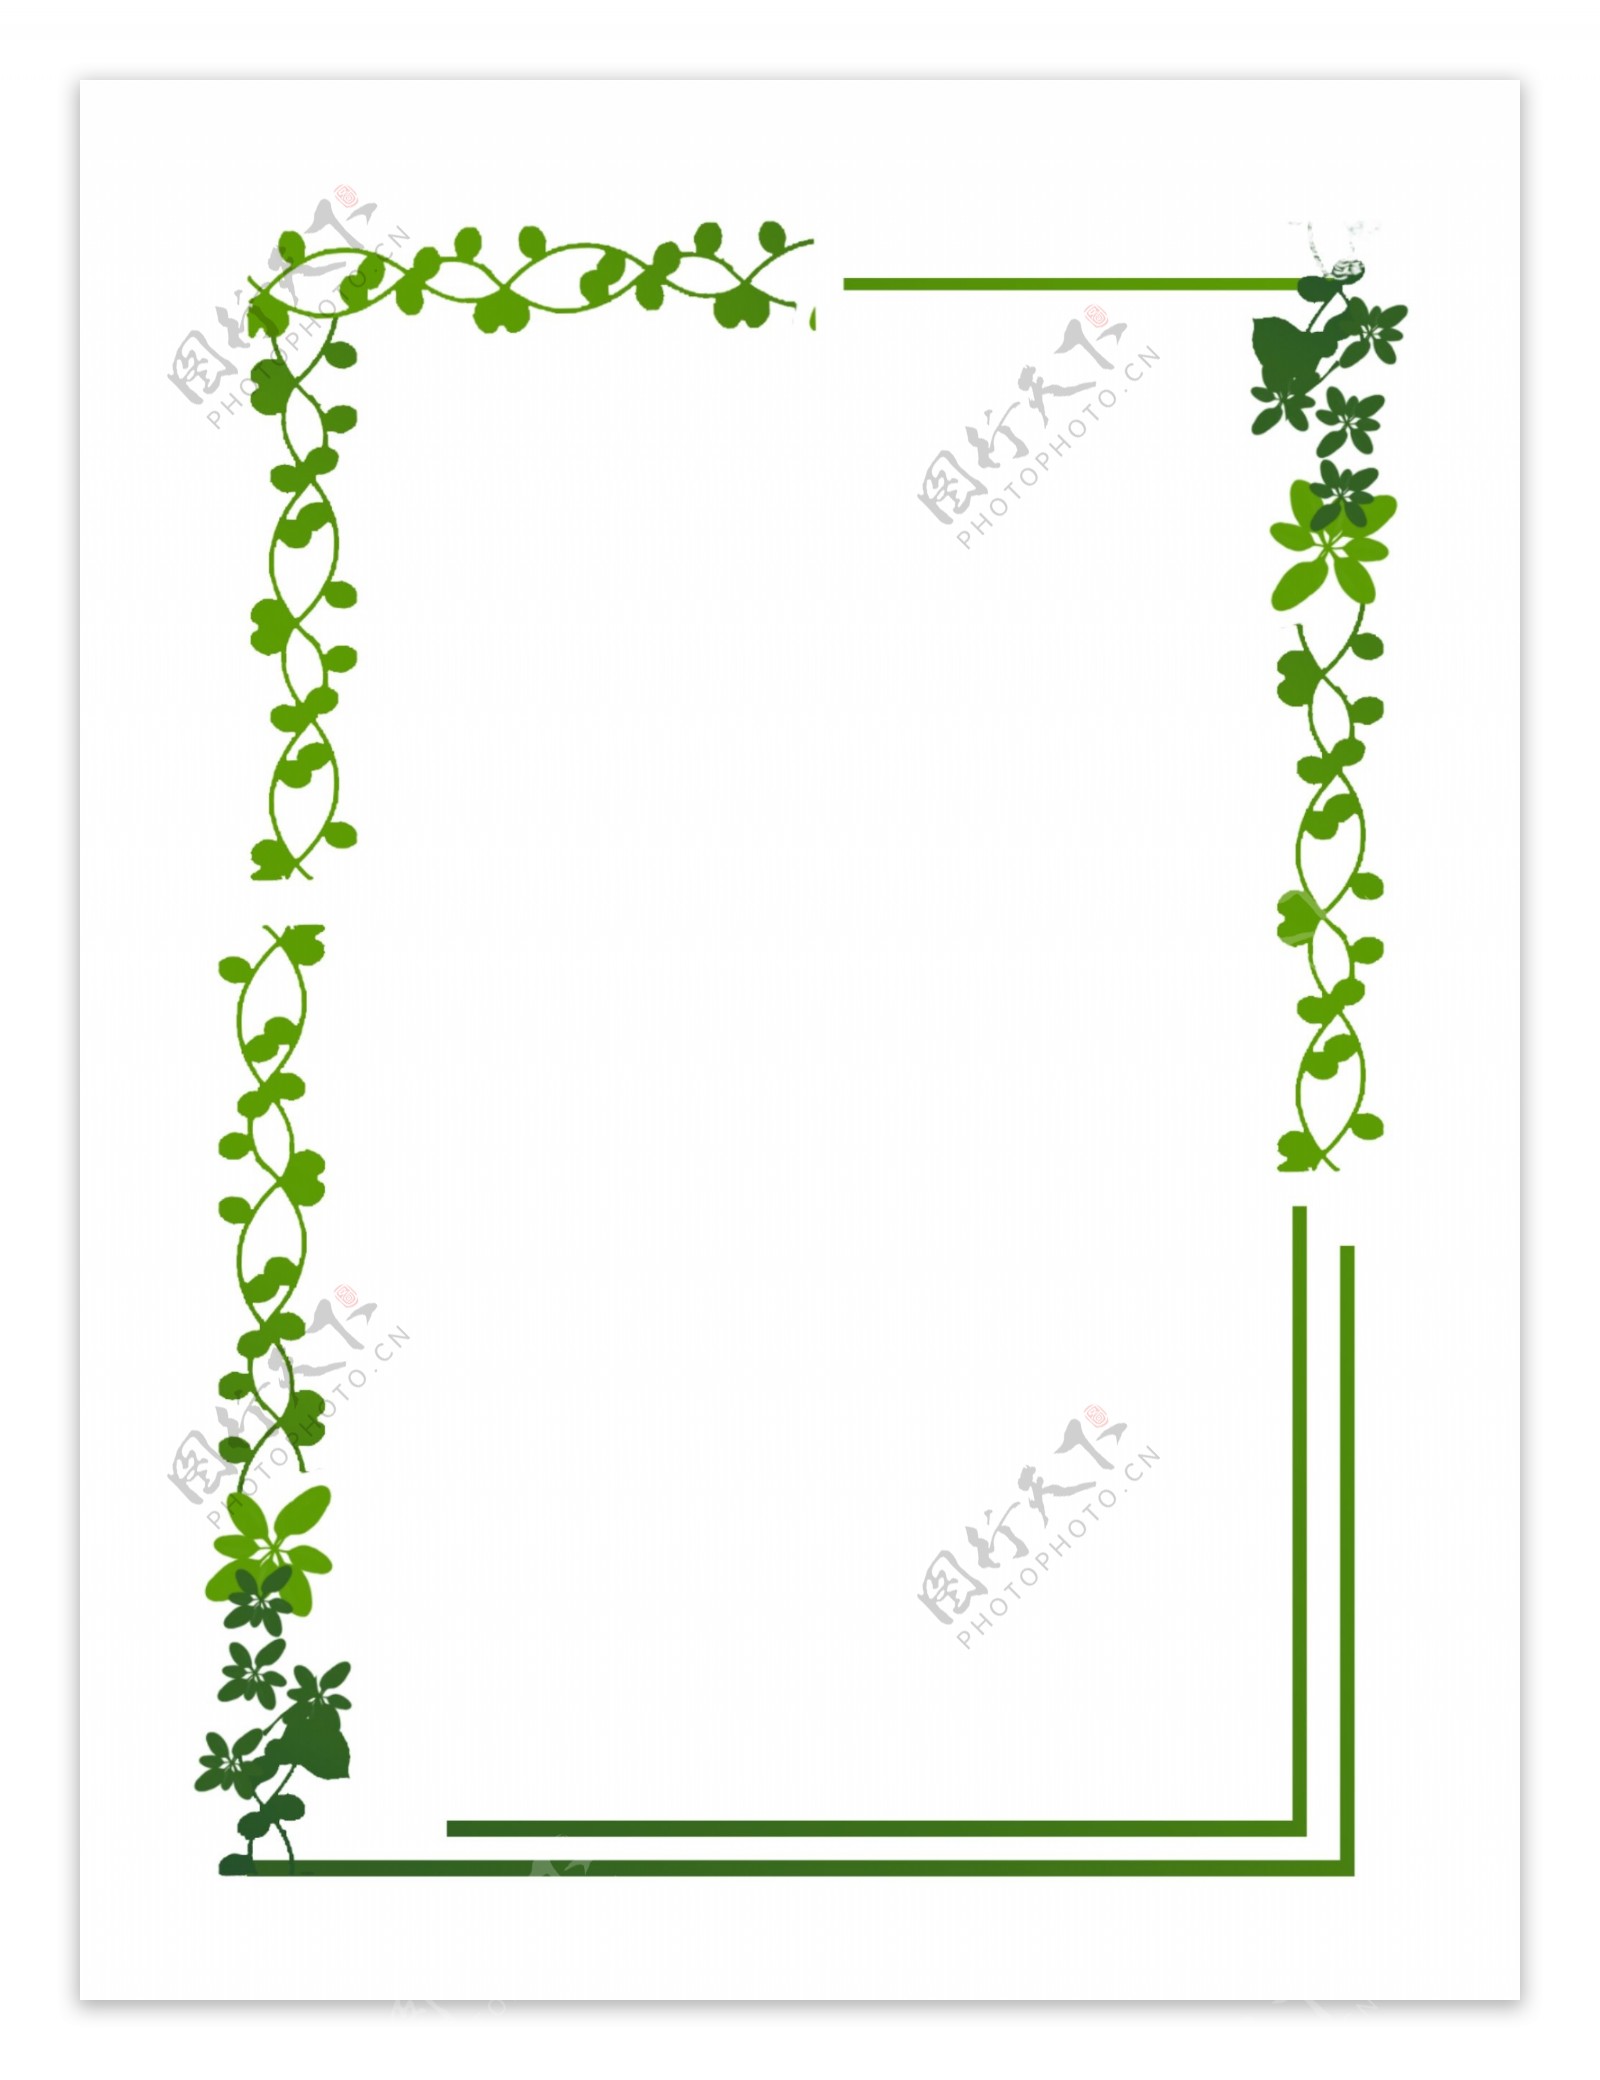 绿色植物树叶手绘边框